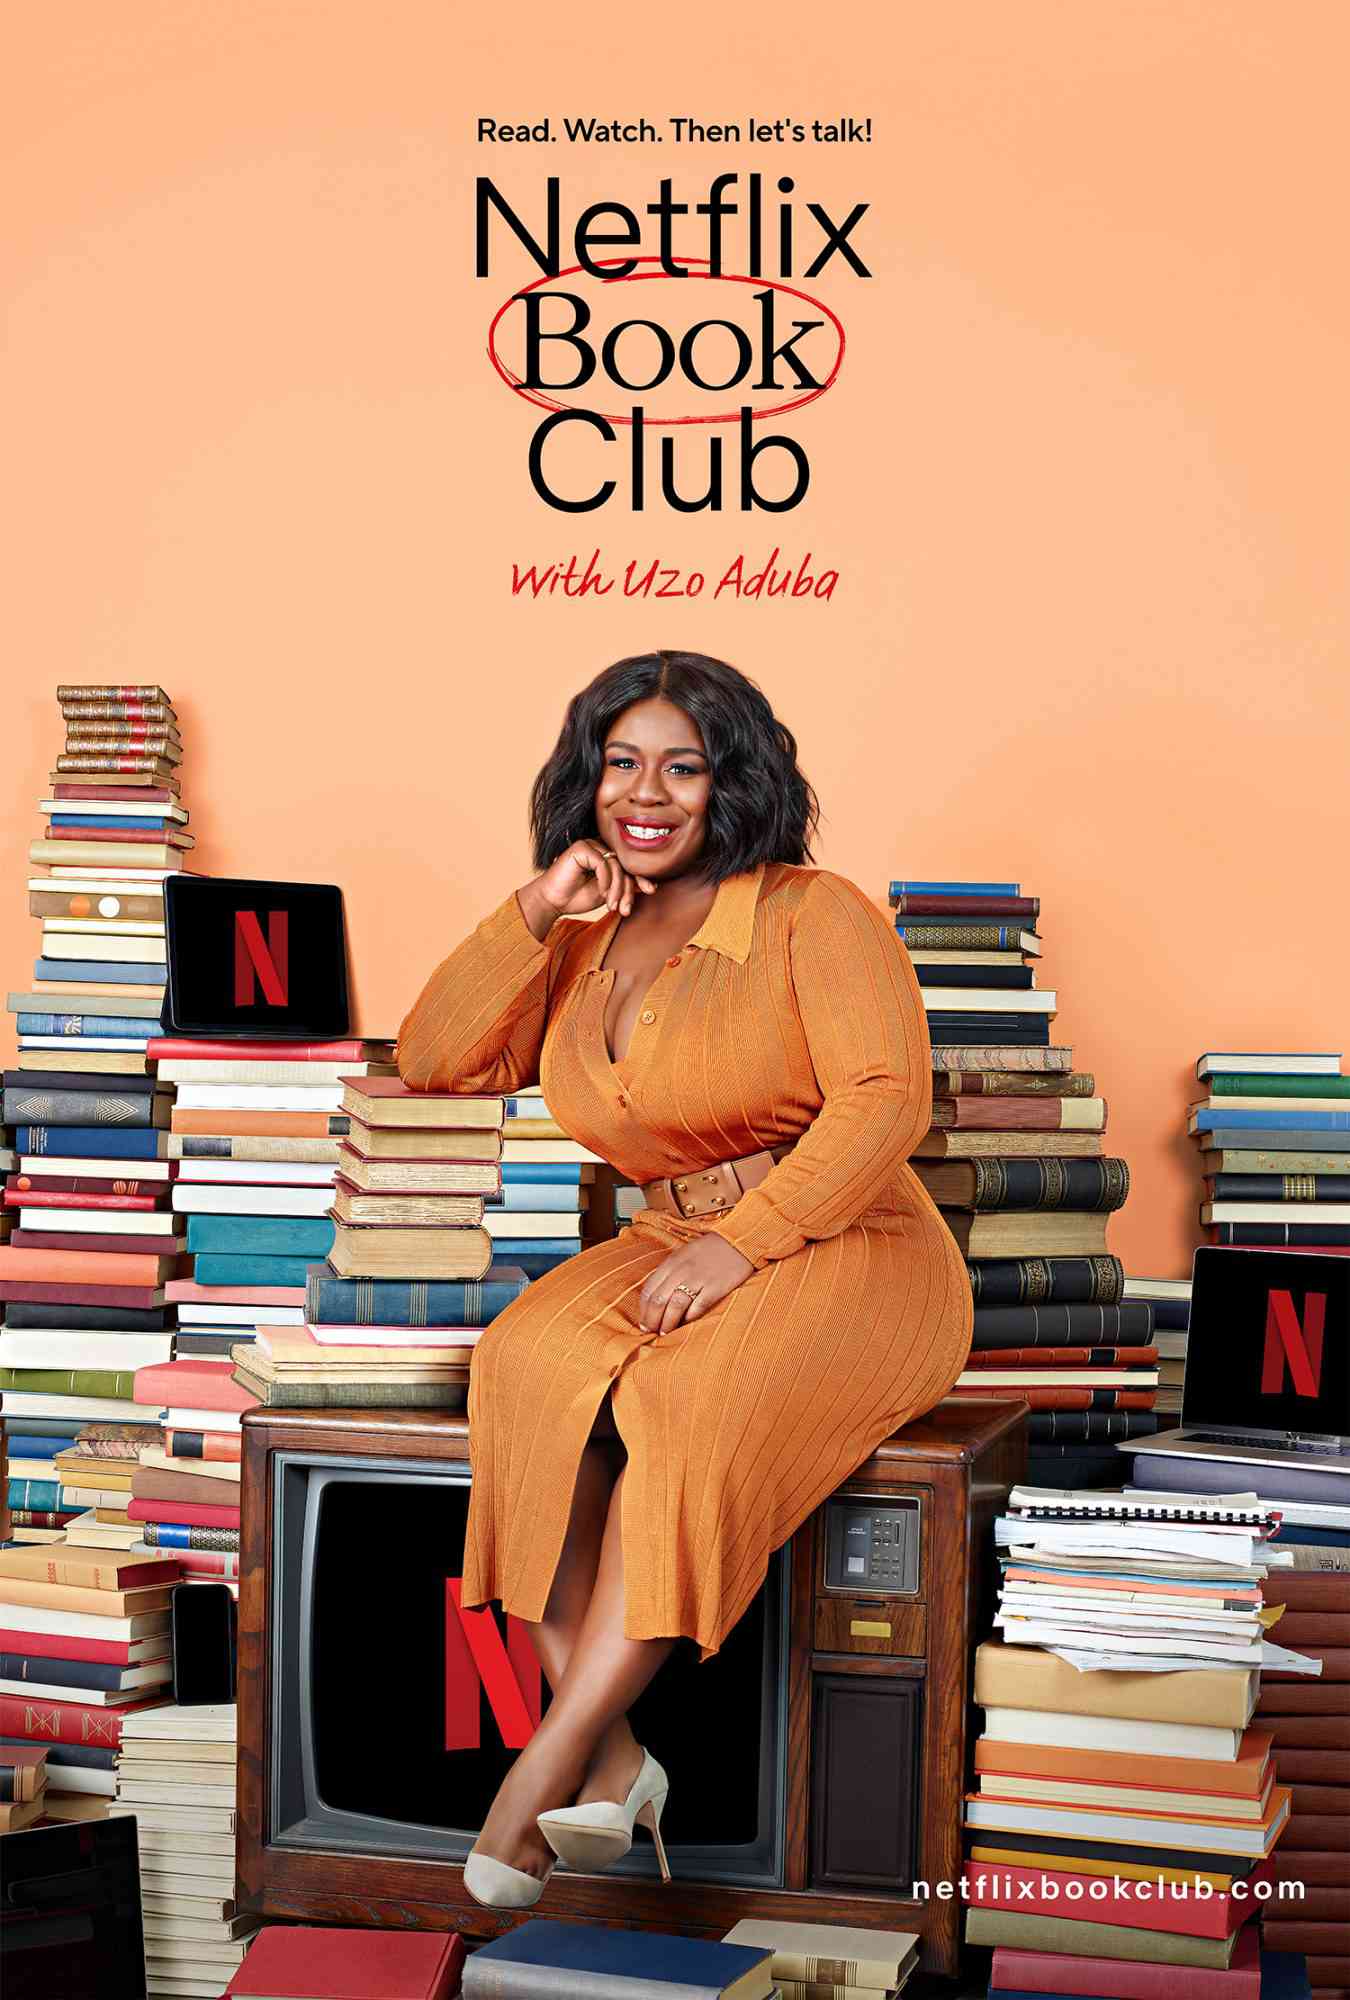 Netflix Mengumumkan Klub Buku untuk Adaptasi Layar Mendatang yang Diselenggarakan oleh Uzo Aduba